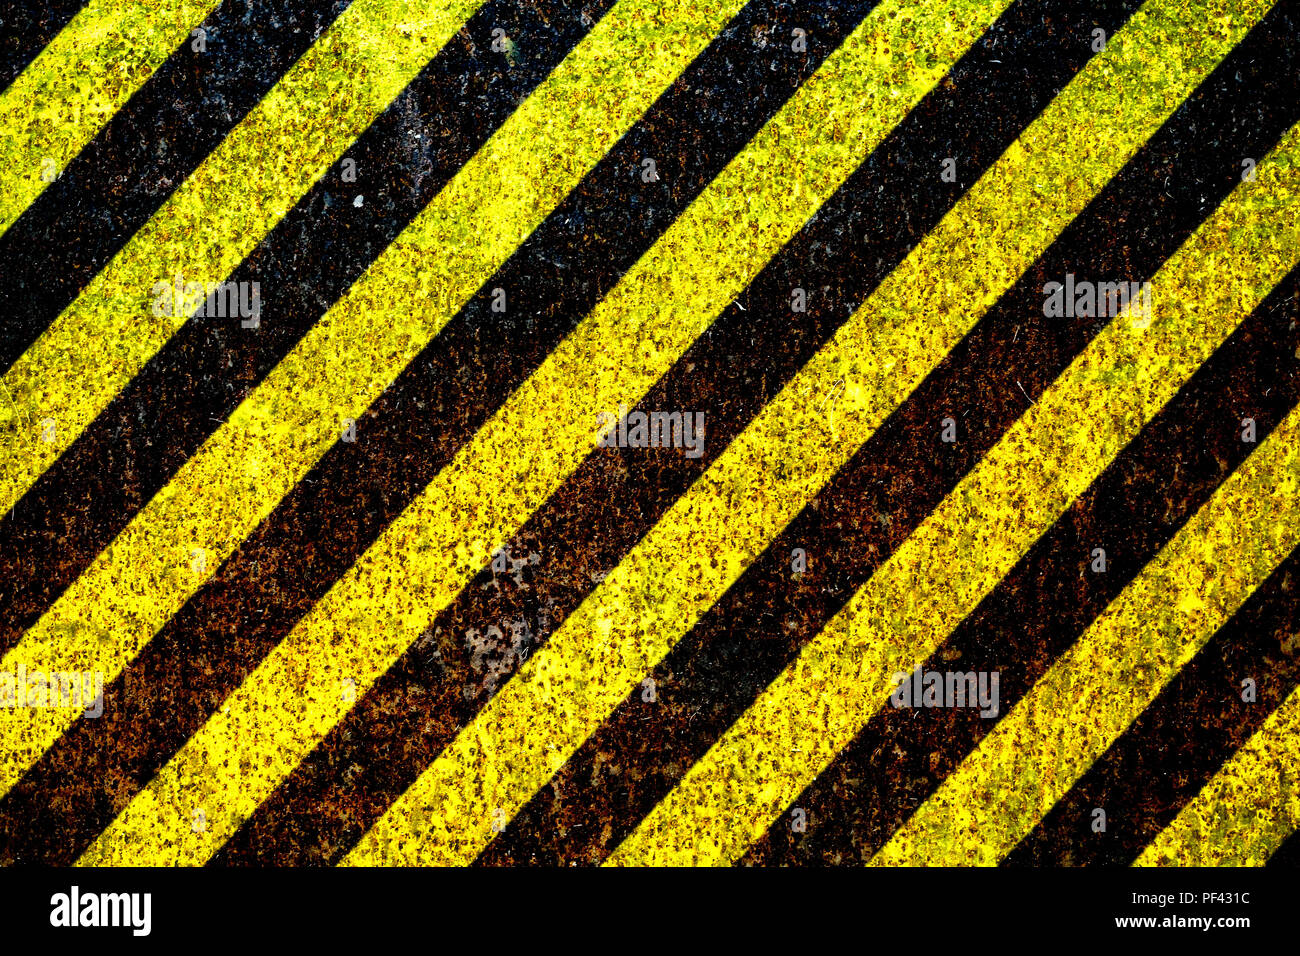 Panneau d'avertissement jaune et noir peint sur plaque de métal rouillé comme texture background. Concept pour ne pas entrer dans le salon, attention, danger, danger Banque D'Images